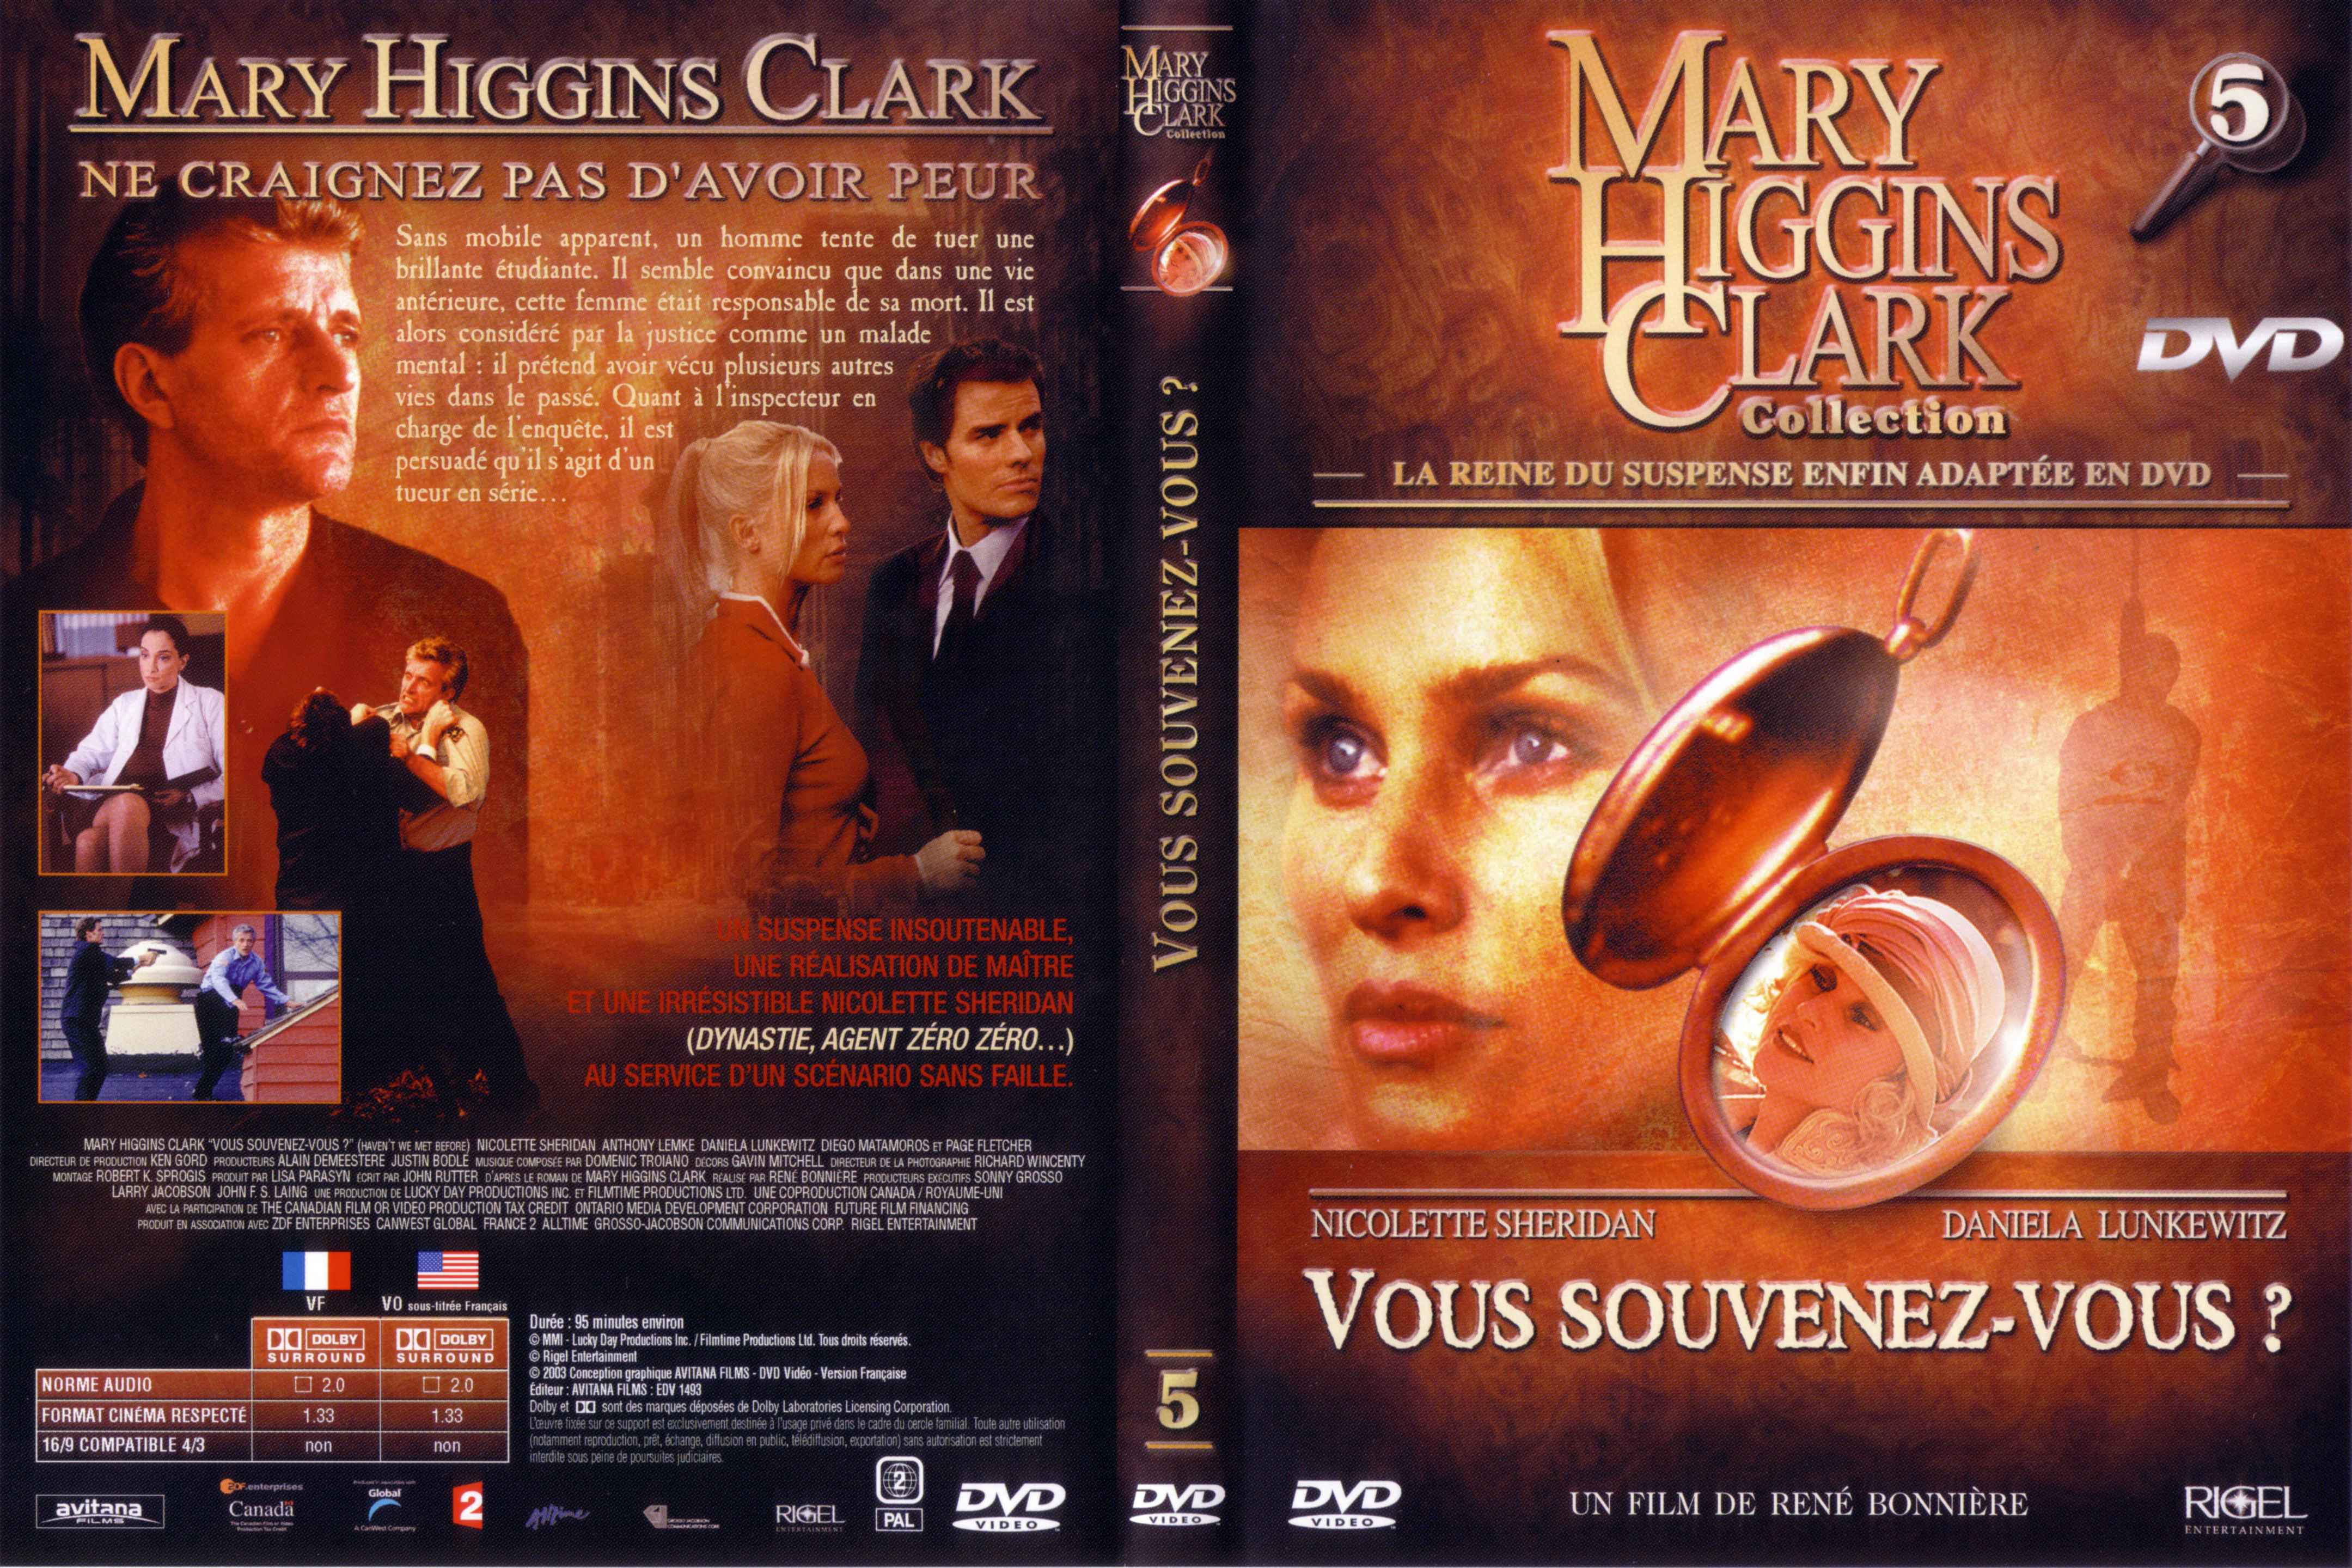 Jaquette DVD de Mary Higgins Clark vol 05 - Vous souvenez vous - Cinéma Passion4319 x 2880